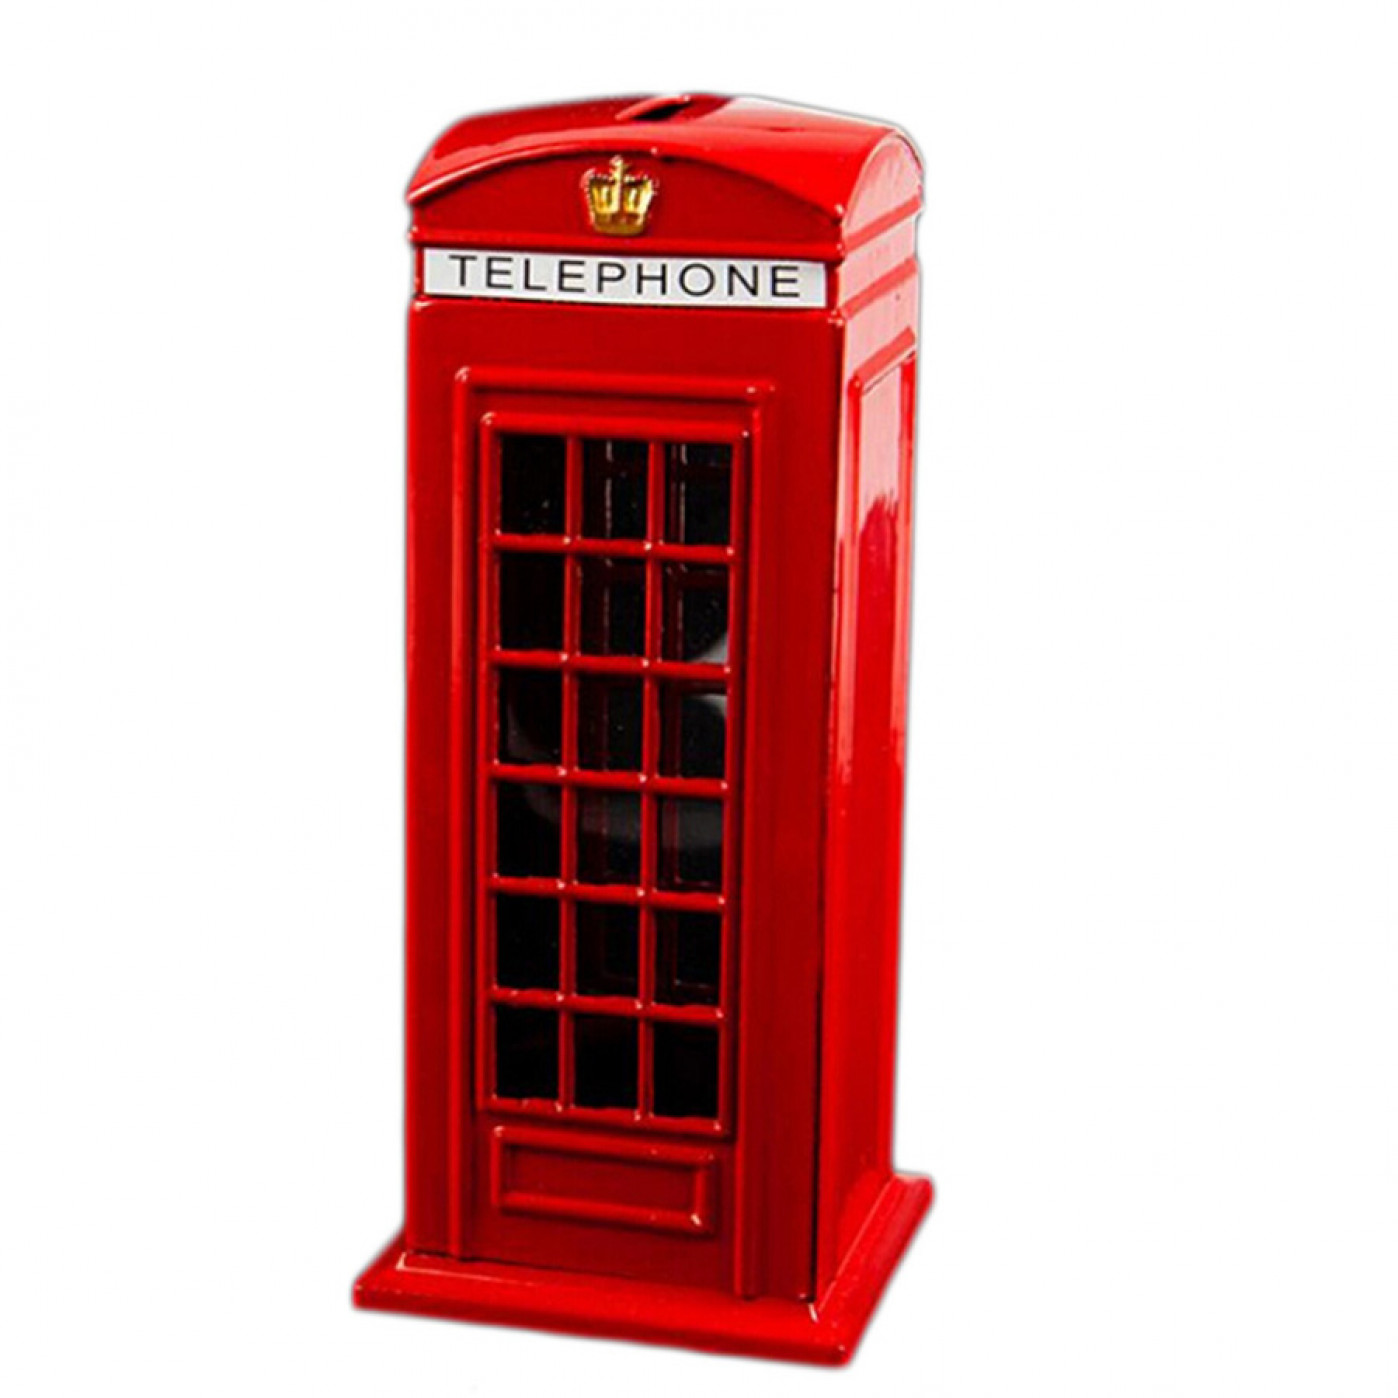 лондон красная телефонная будка